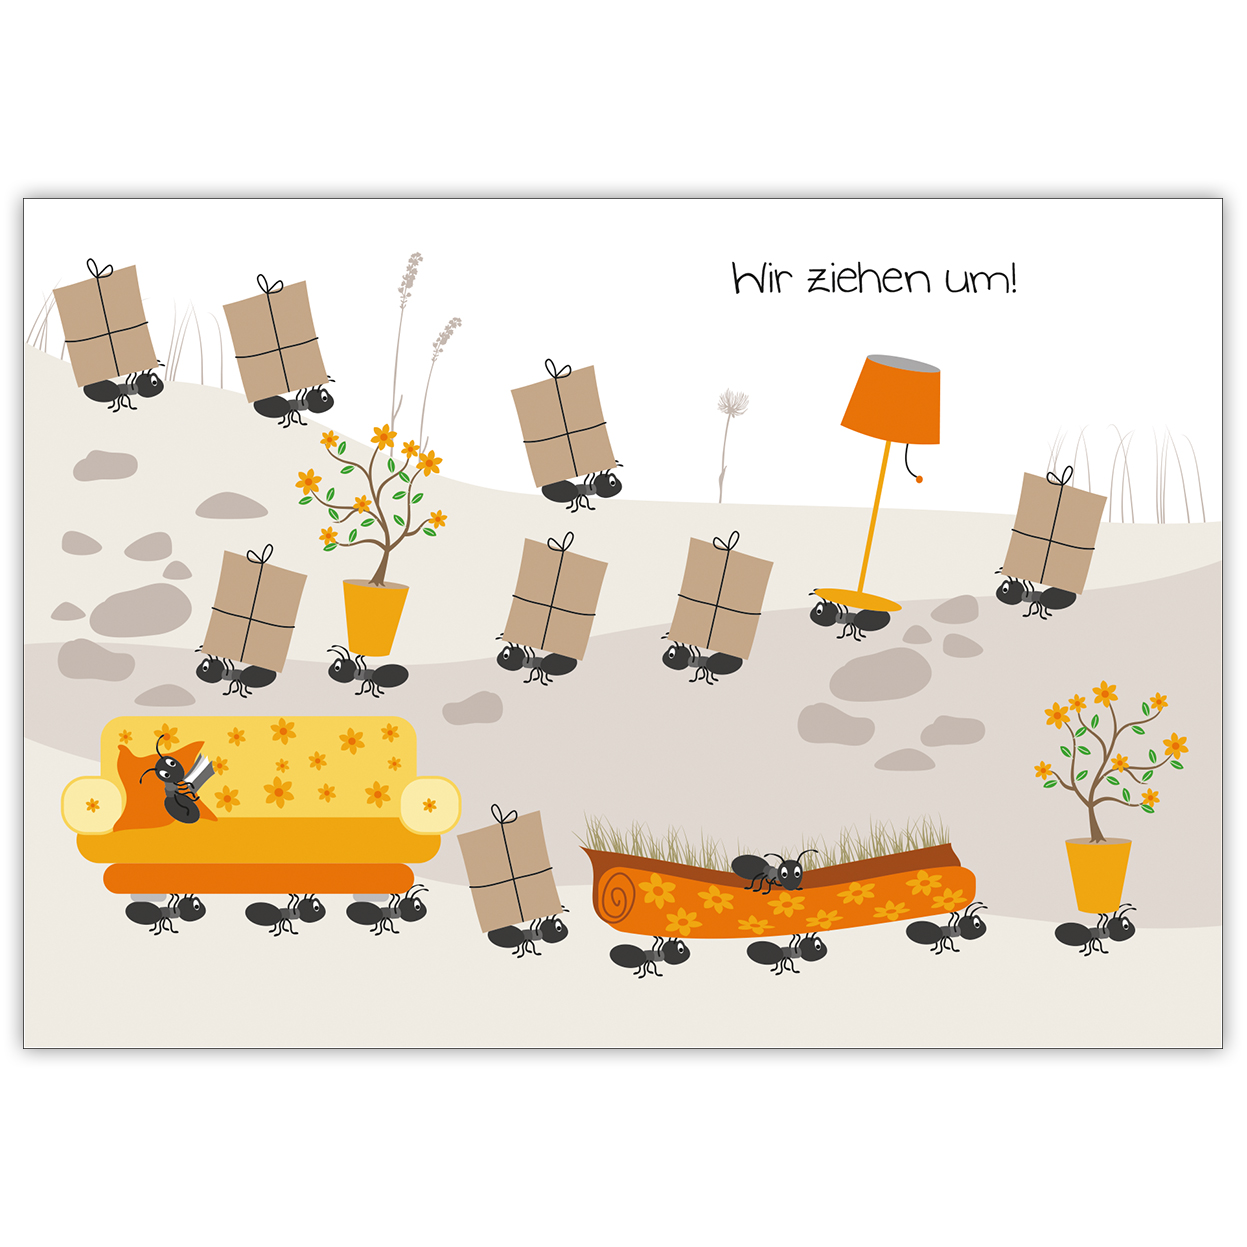 Lustige Umzugskarte/ Anzeige mit lauter kleinen fleißigen Ameisen: Wir ziehen um!